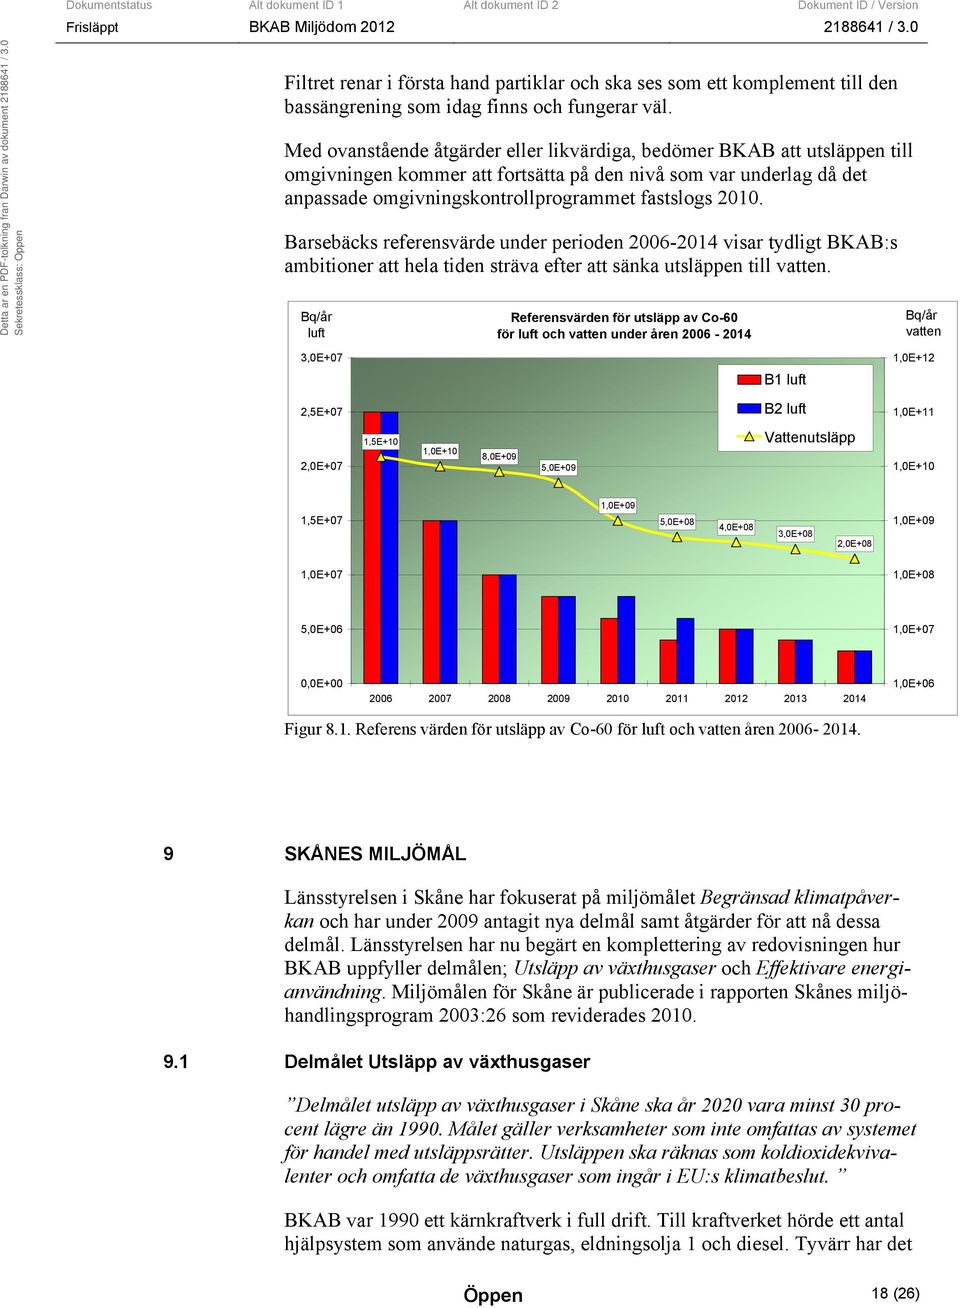 Barsebäcks referensvärde under perioden 2006-2014 visar tydligt BKAB:s ambitioner att hela tiden sträva efter att sänka utsläppen till vatten.